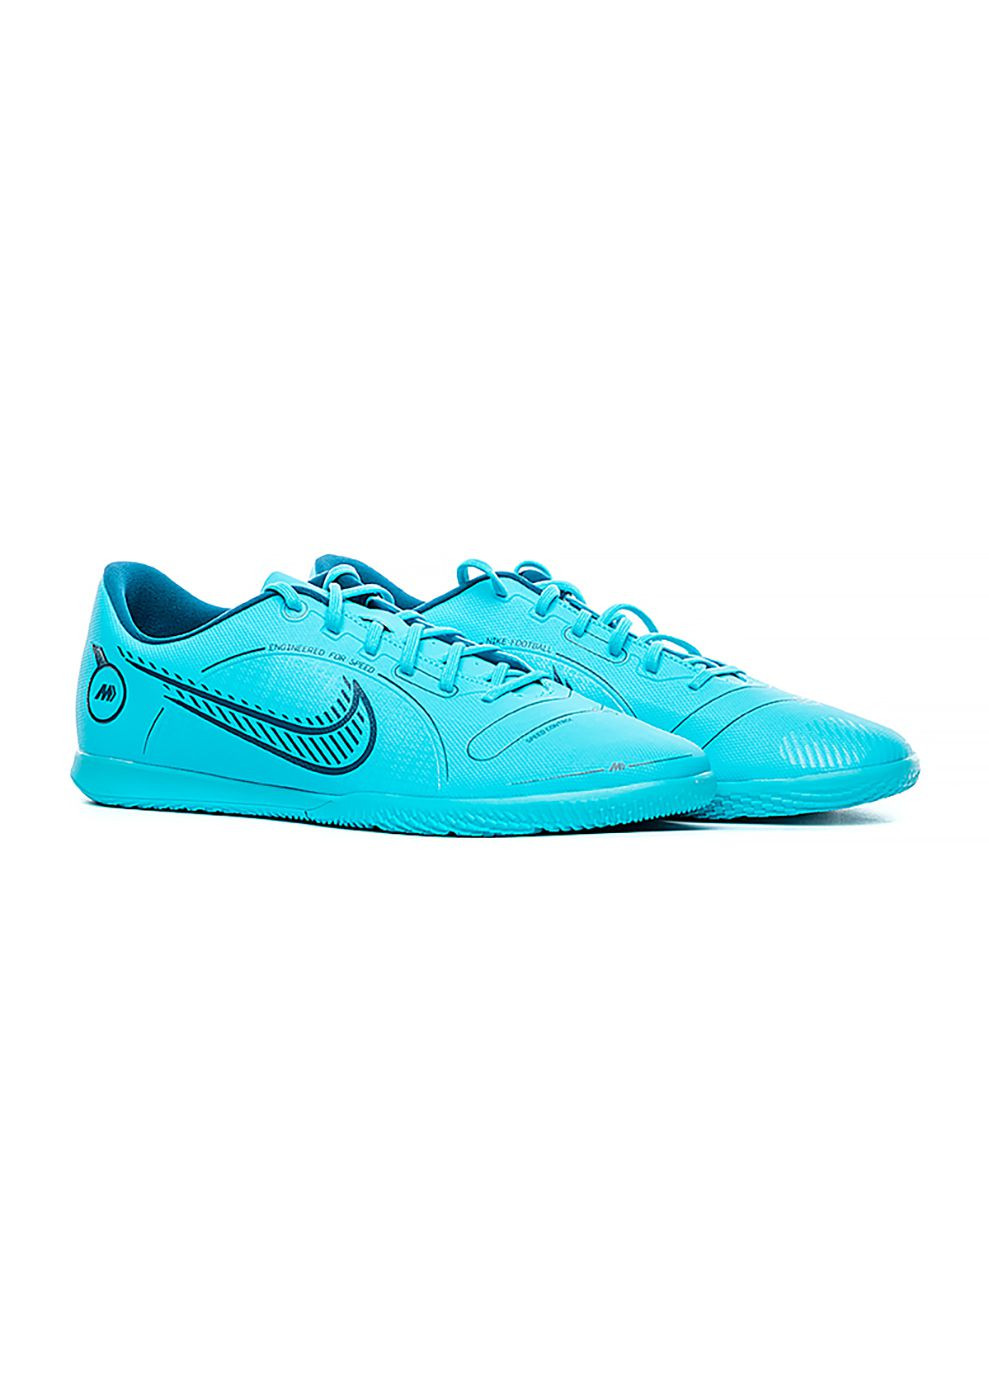 Голубые мужские футзалки vapor 14 club ic голубой Nike